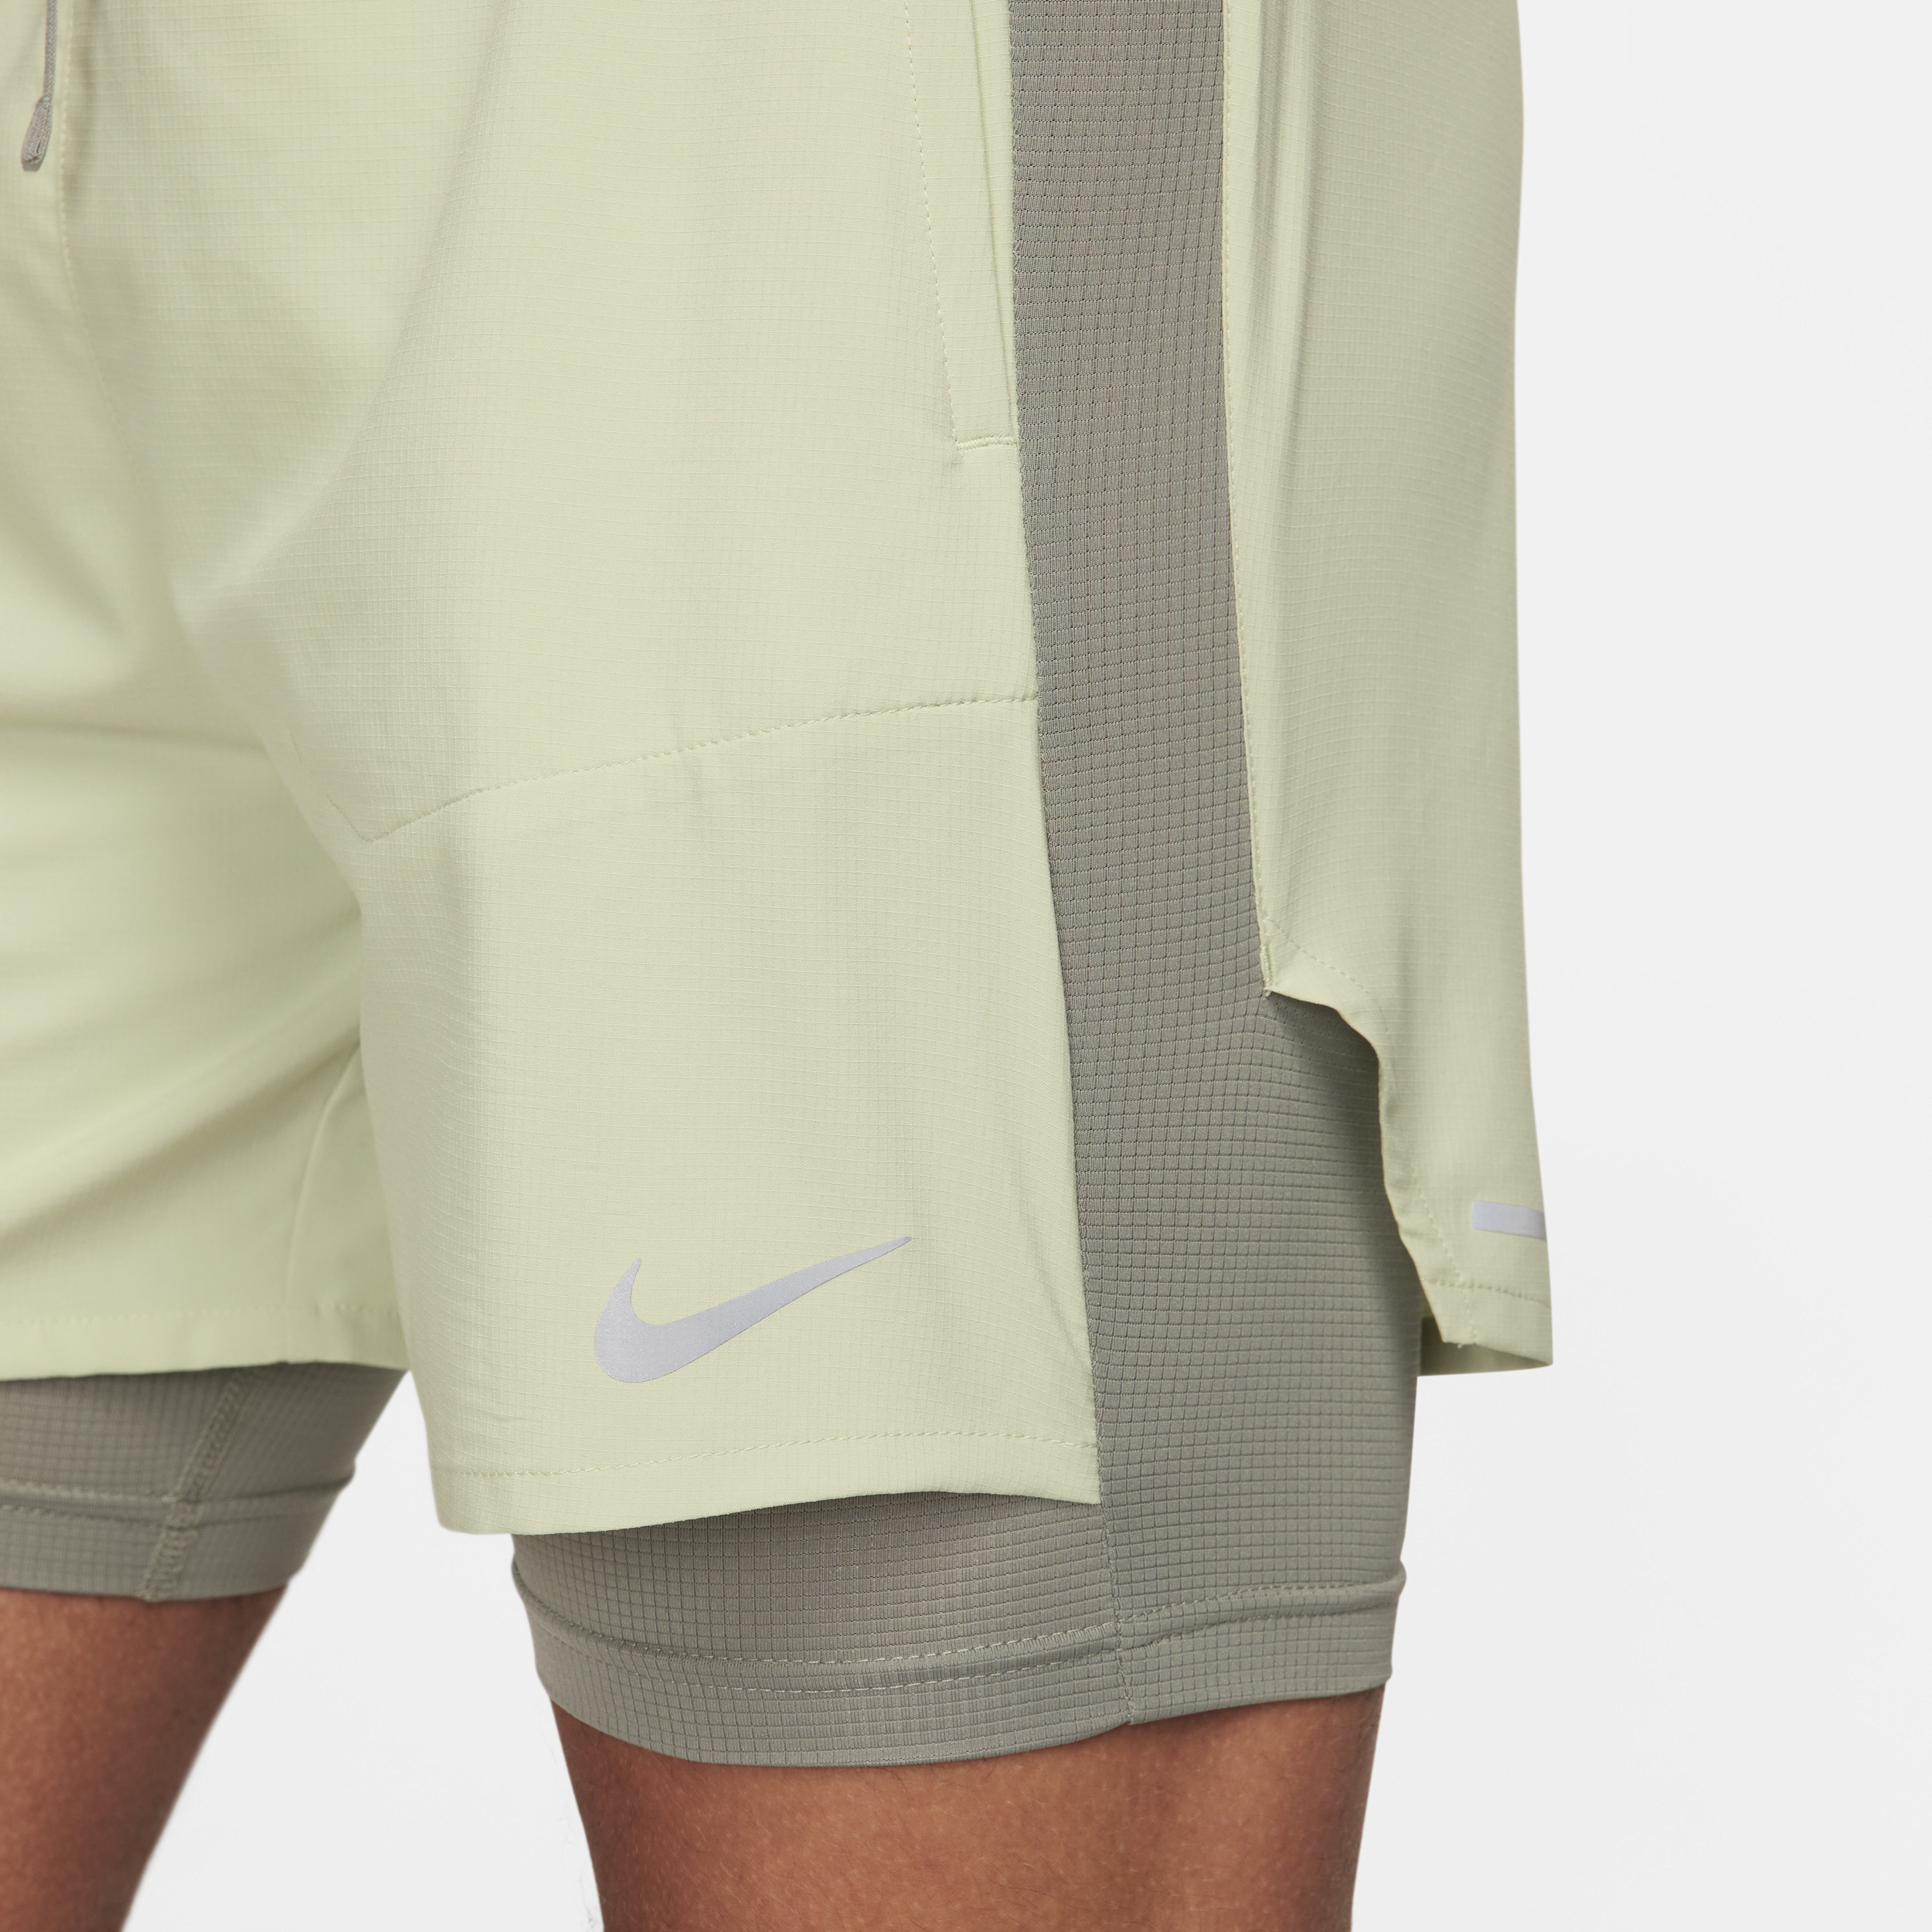 Nike Stride Dri-FIT hybride hardloopshorts voor heren (13 cm) Groen